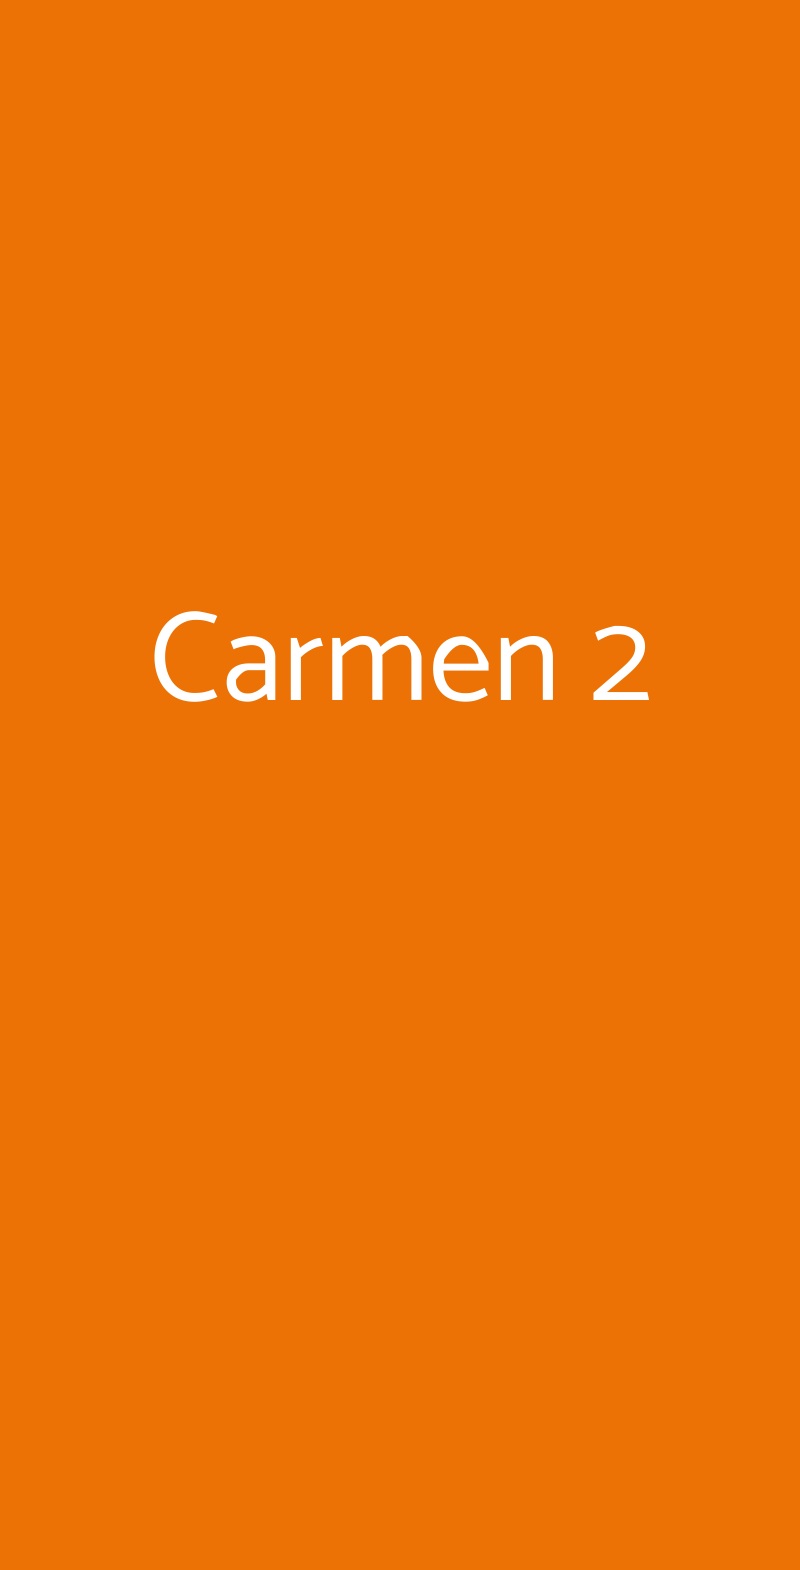 Carmen 2 Milano menù 1 pagina